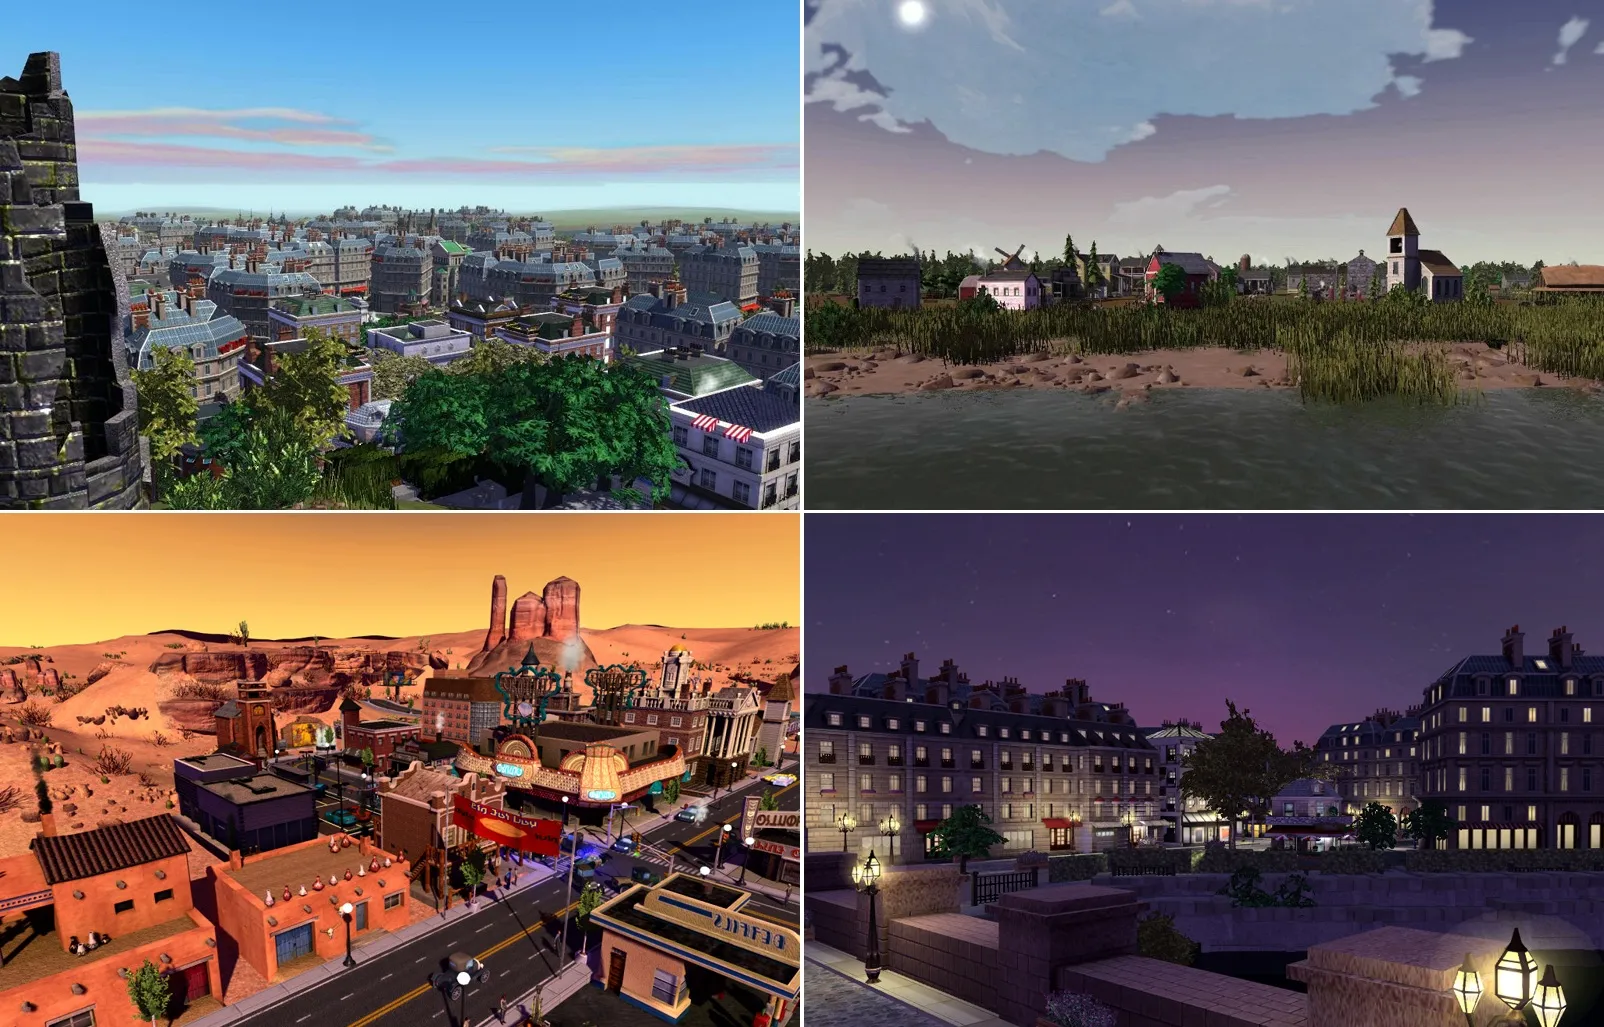 SimCity Societies: Modele cidades com diferentes valores sociais